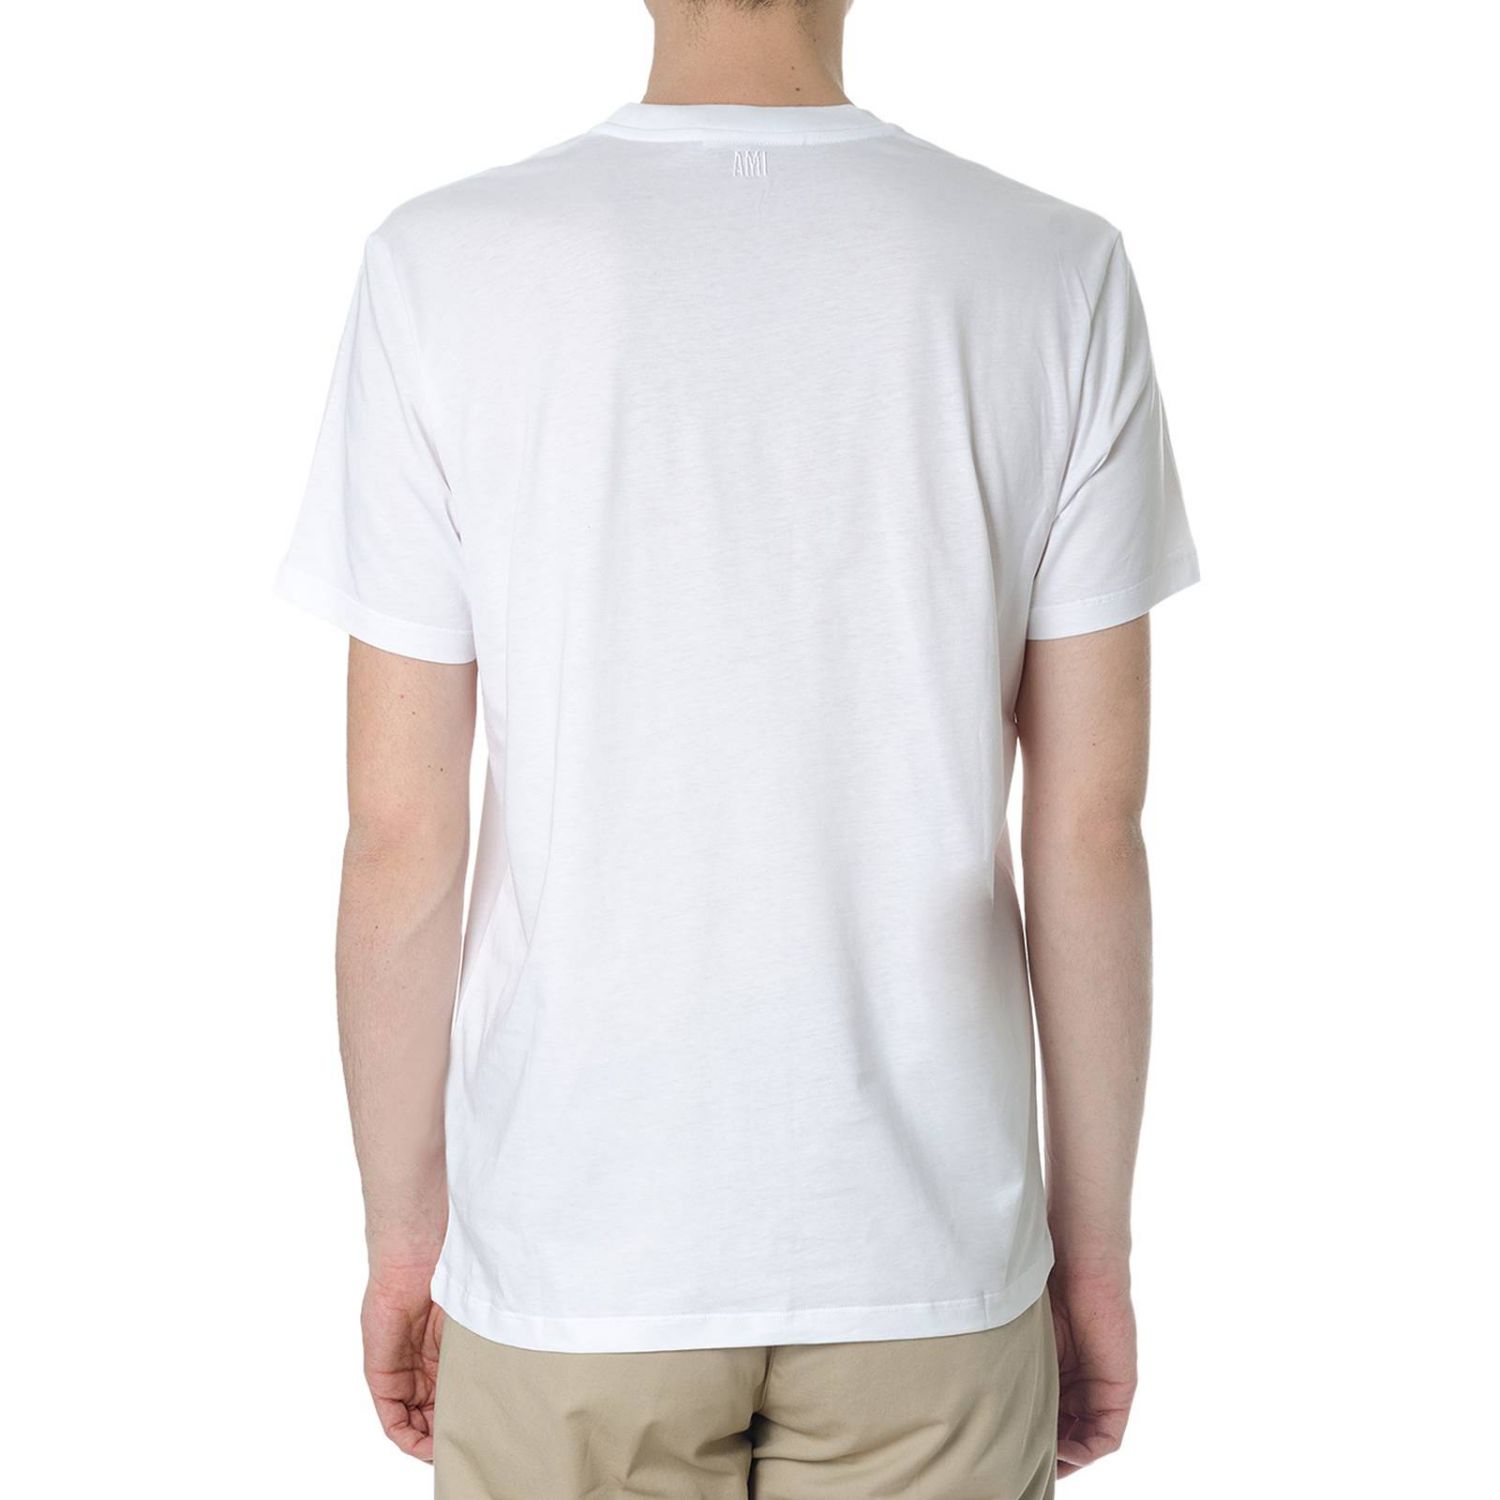 Ami Paris Outlet: T-shirt men Ami Alexandre Mattiussi - White | T-Shirt ...